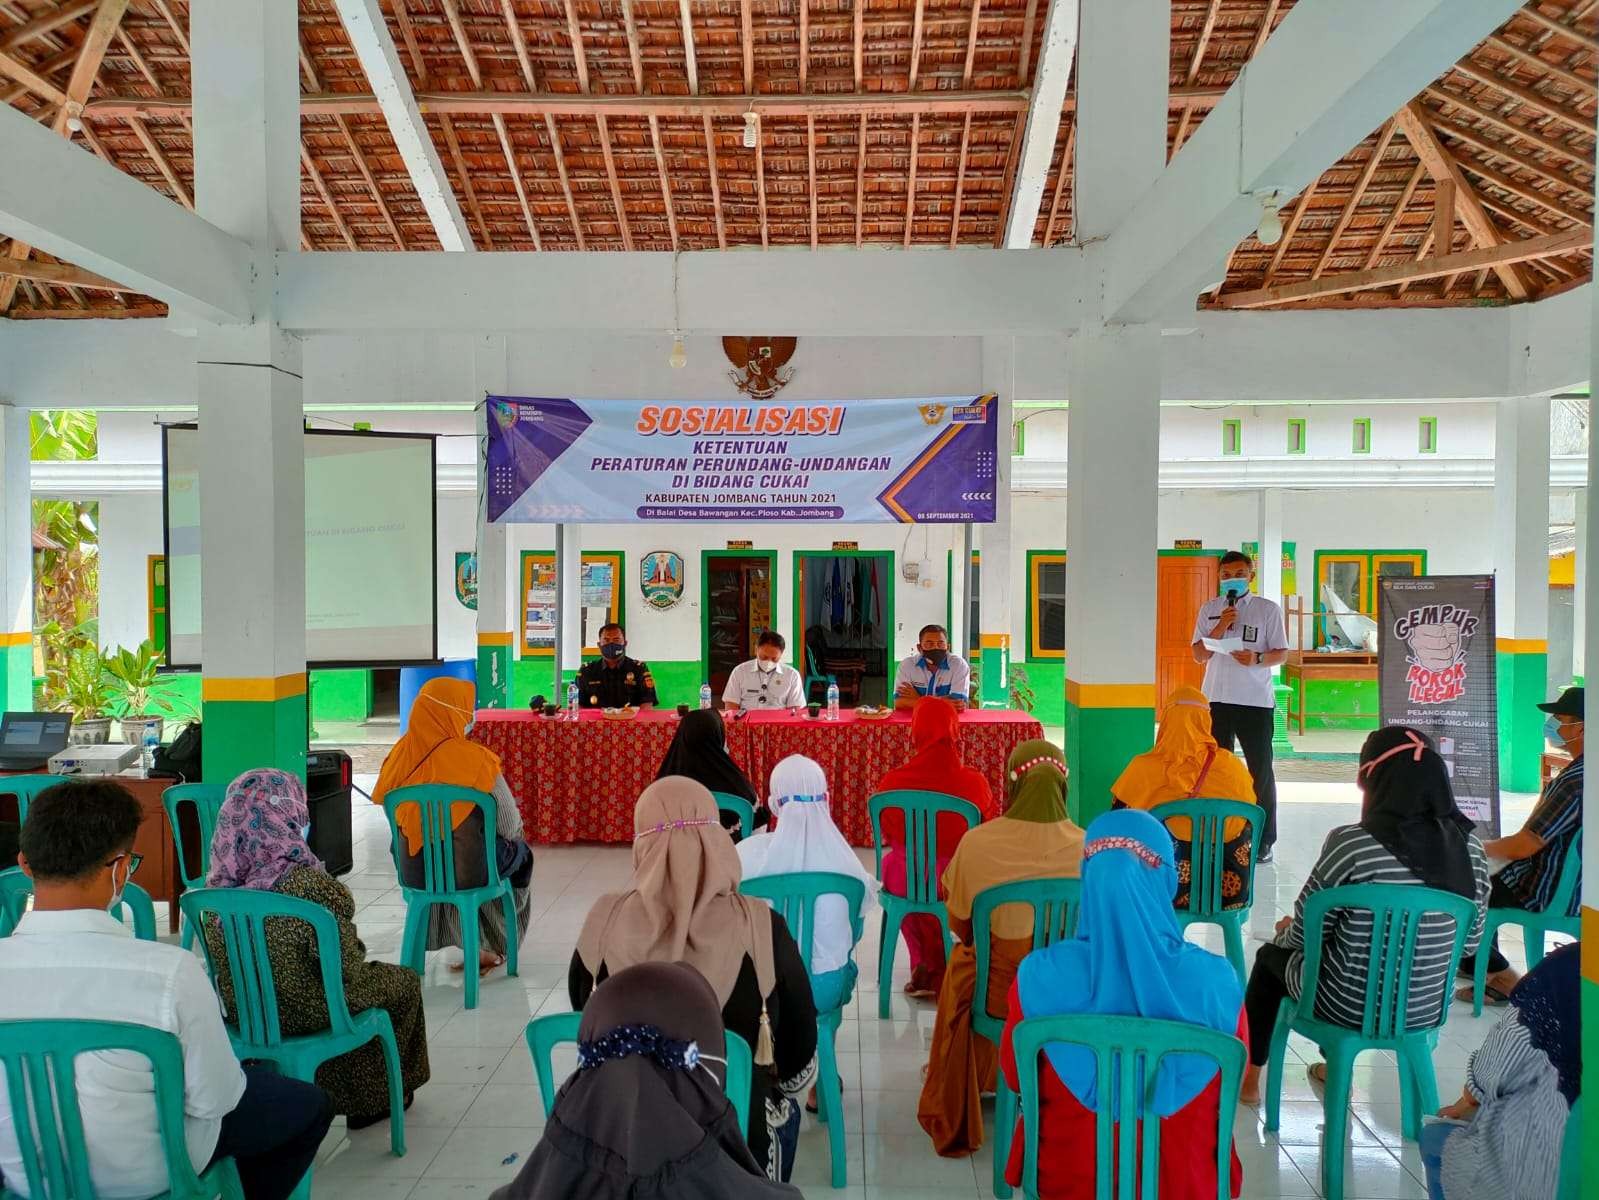 Sosialisasi ketentuan peraturan perundang-undangan bidang cukai dengan tajuk Gempur Rokok Ilegal di Desa Bawangan, Kecamatan Ploso, Kabupaten Jombang, Rabu 8 September 2021. (Foto: Istimewa)